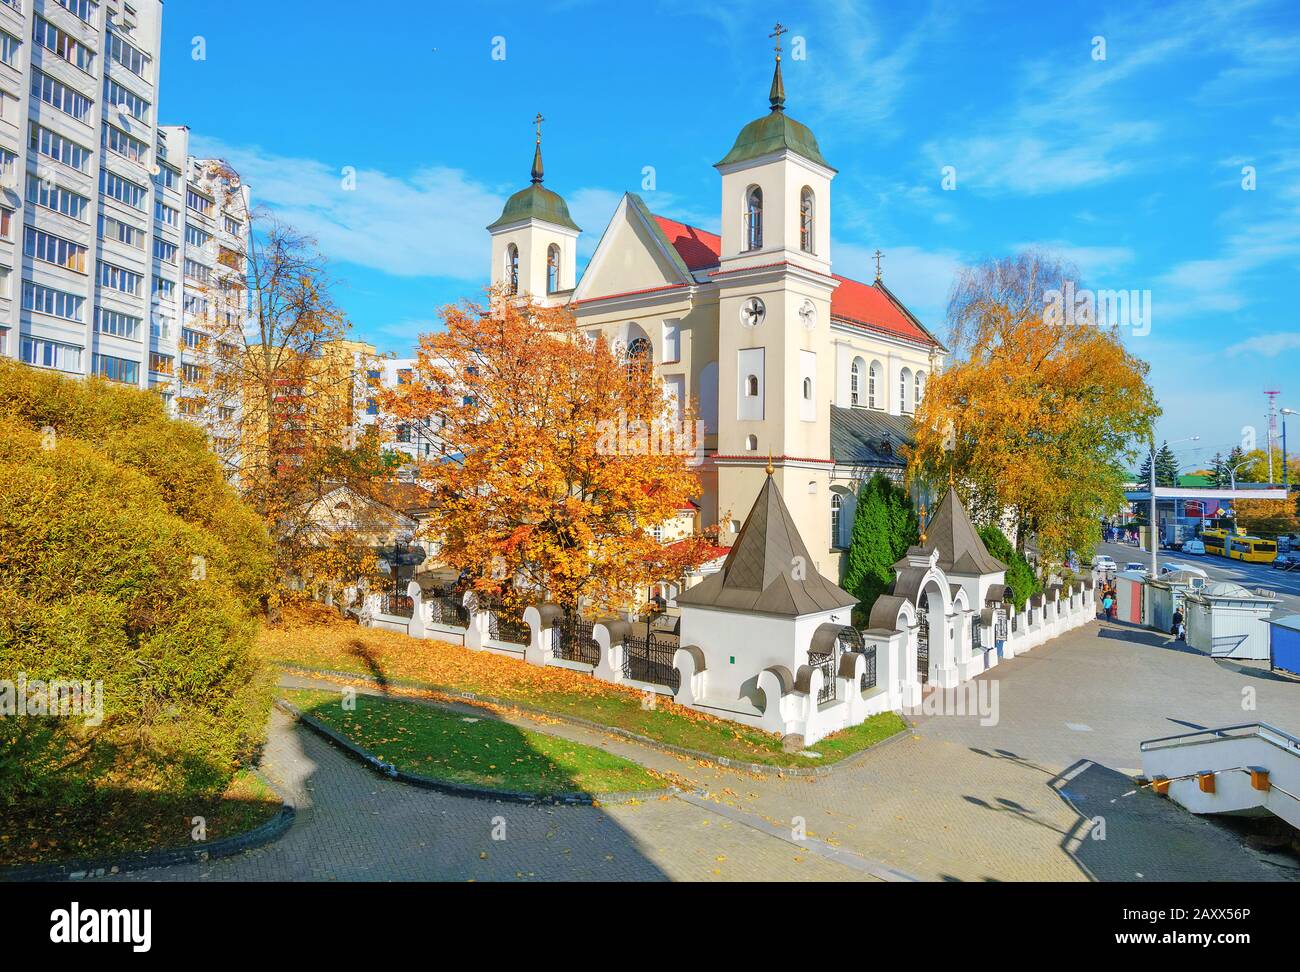 Église orthodoxe de St.Peter et Paul dans le quartier résidentiel. Minsk, Biélorussie Banque D'Images